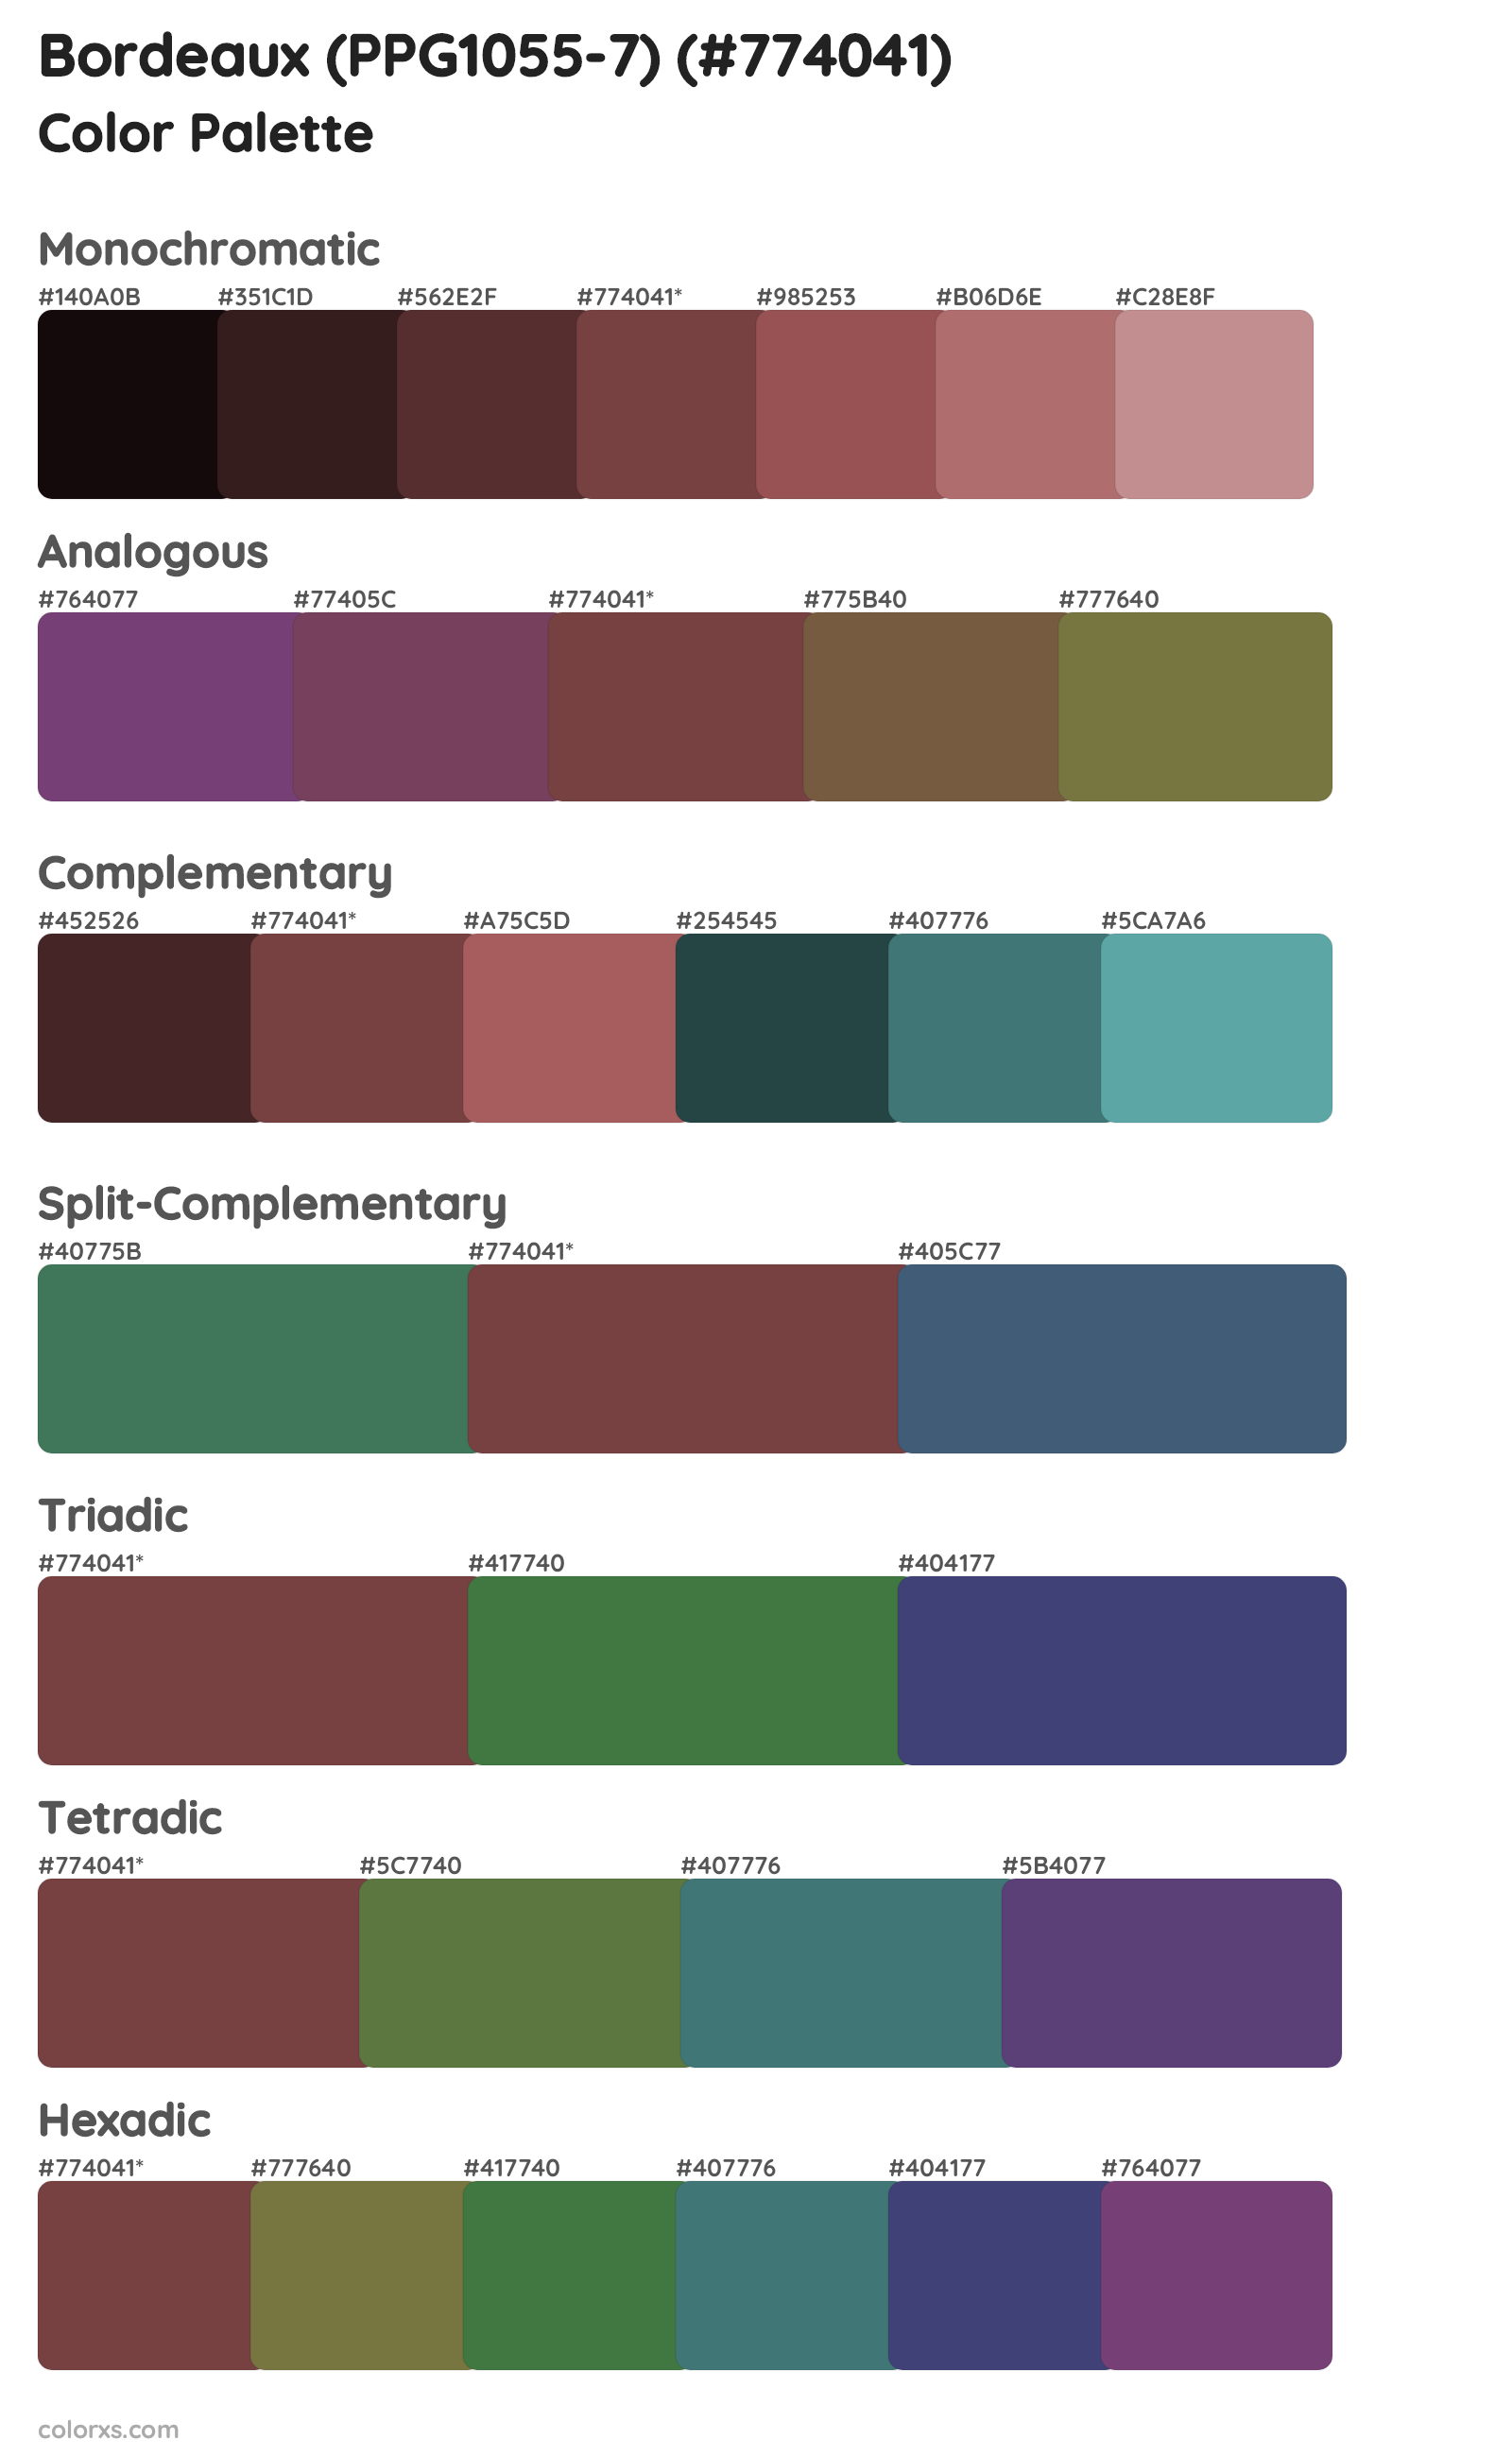 Bordeaux (PPG1055-7) Color Scheme Palettes